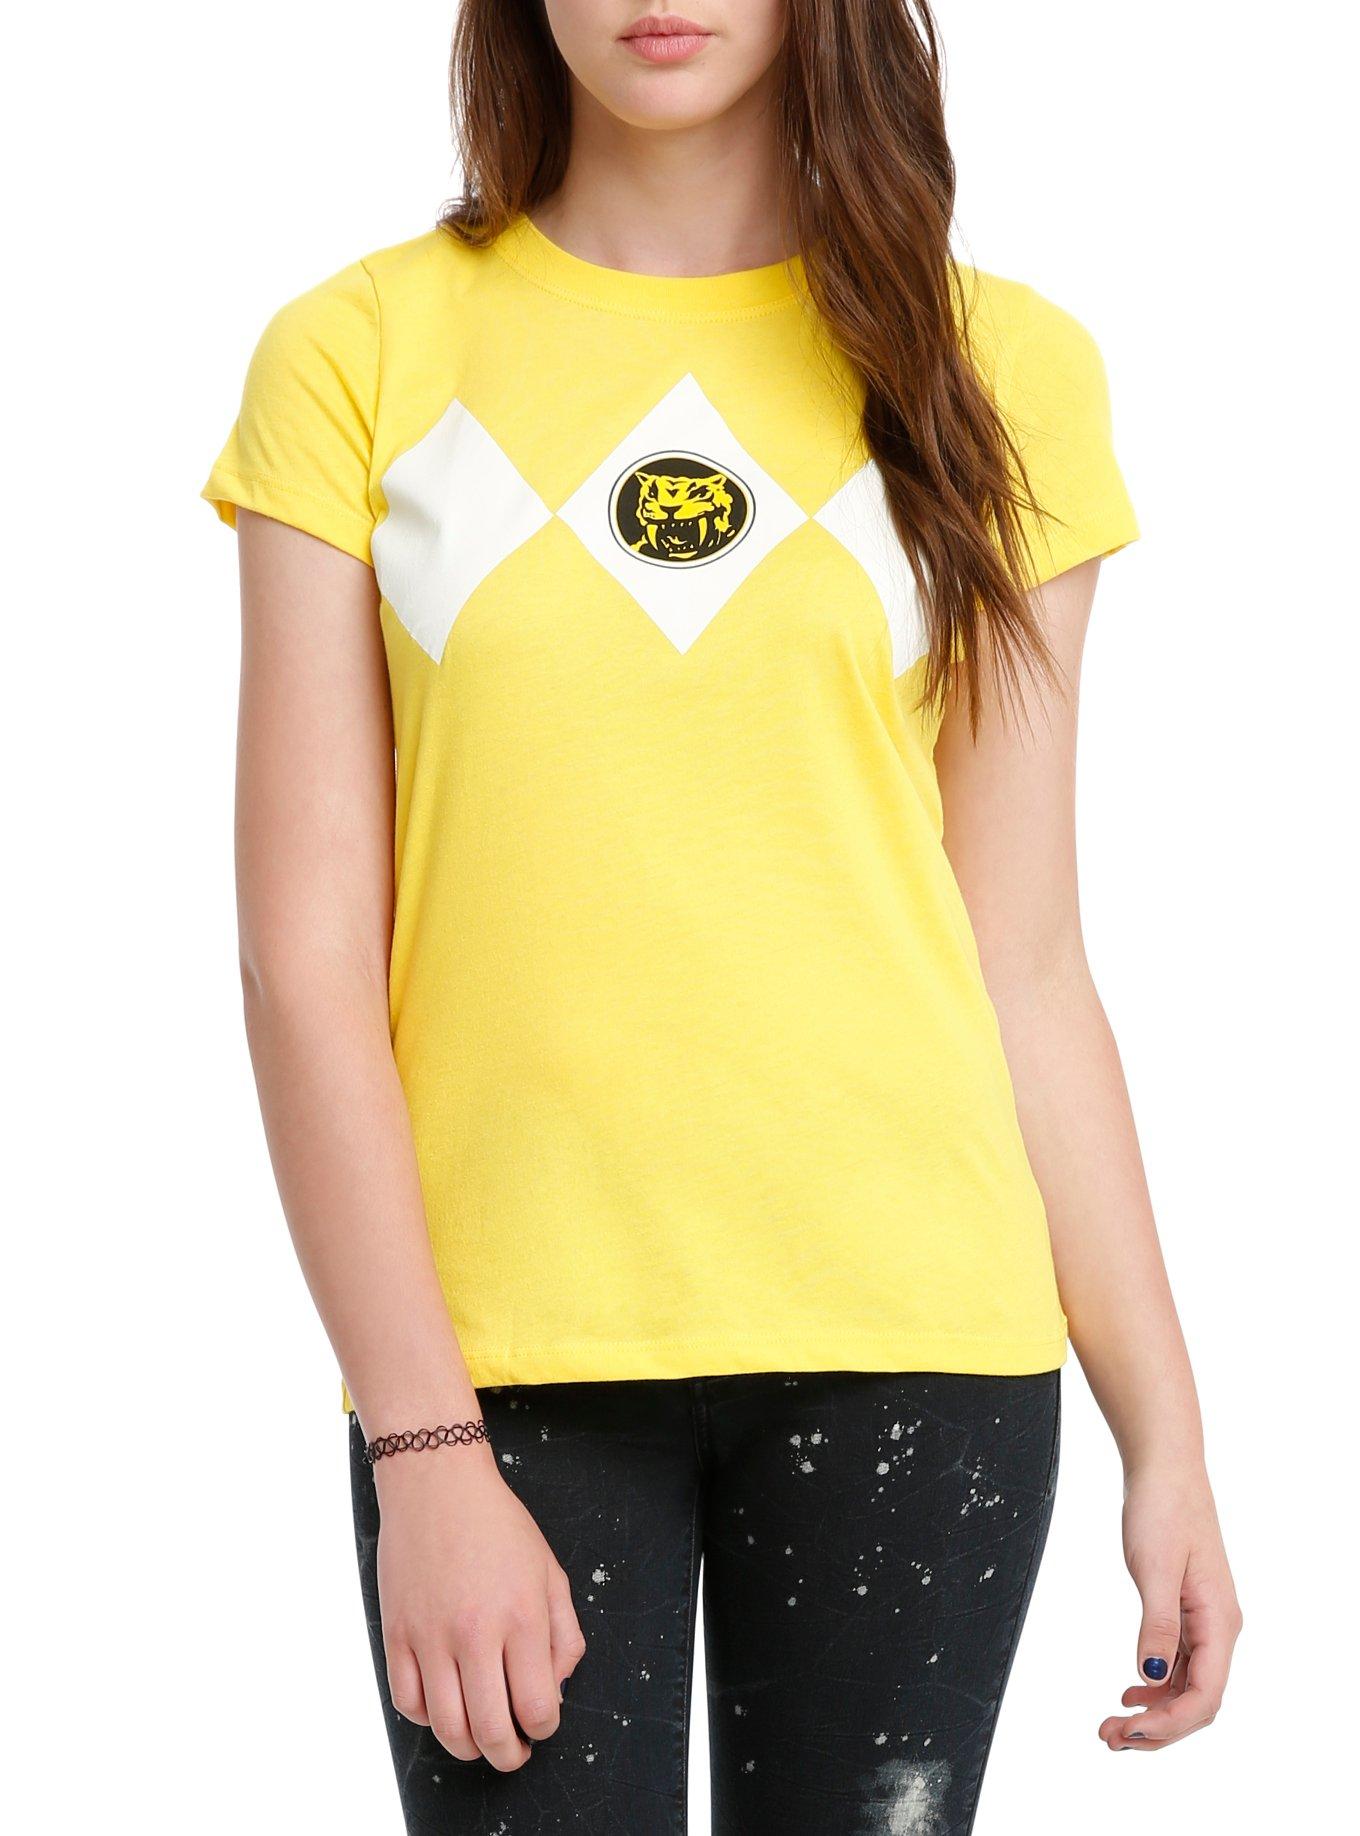 Mighty Morphin Power Rangers Yellow Ranger Cosplay Girls  T-Shirt, YELLOW, hi-res